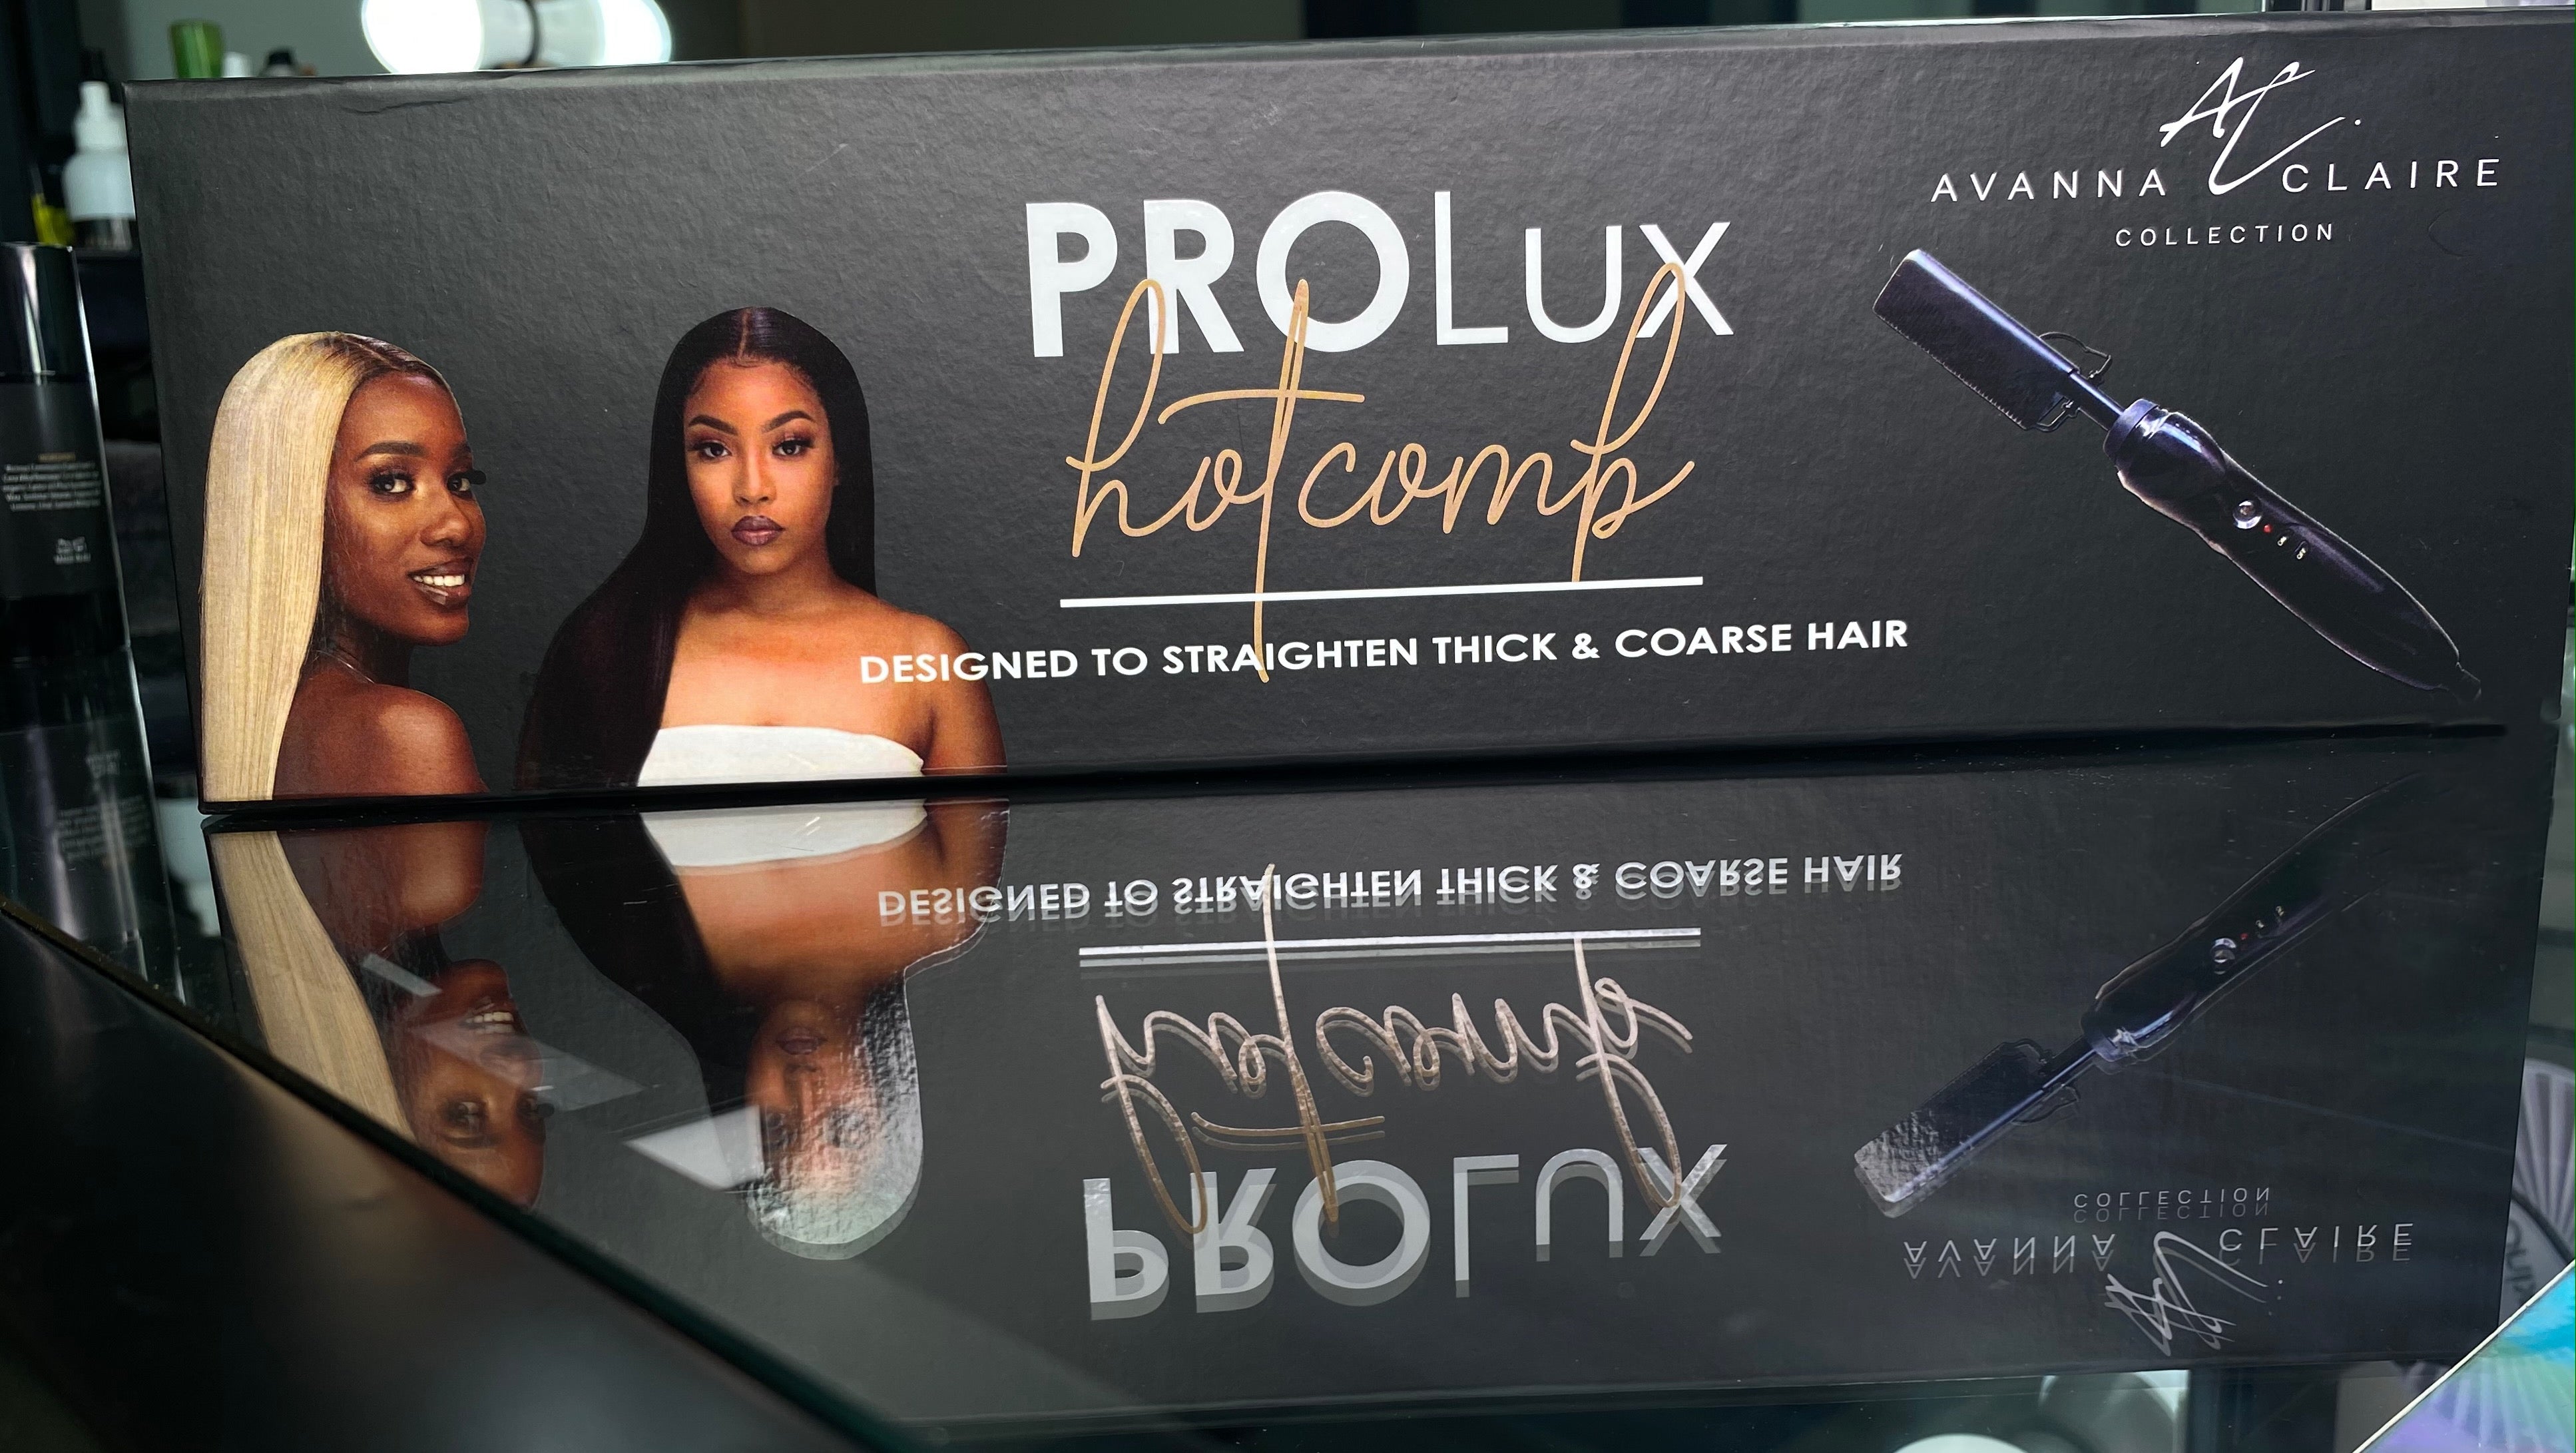 PROLux Hotcomb